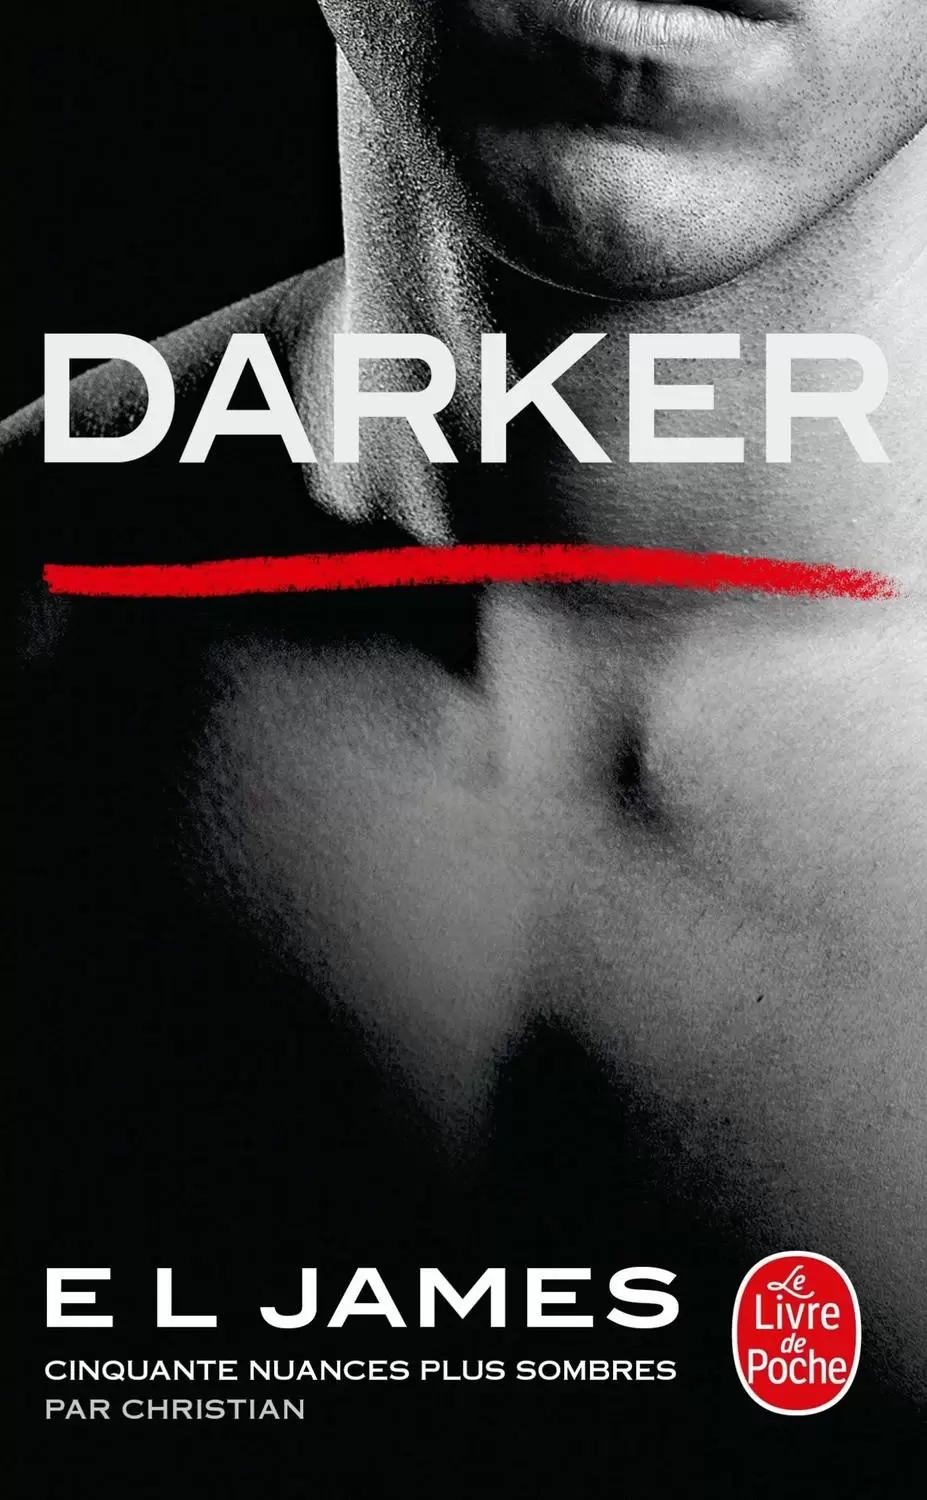 E. L. James - Darker